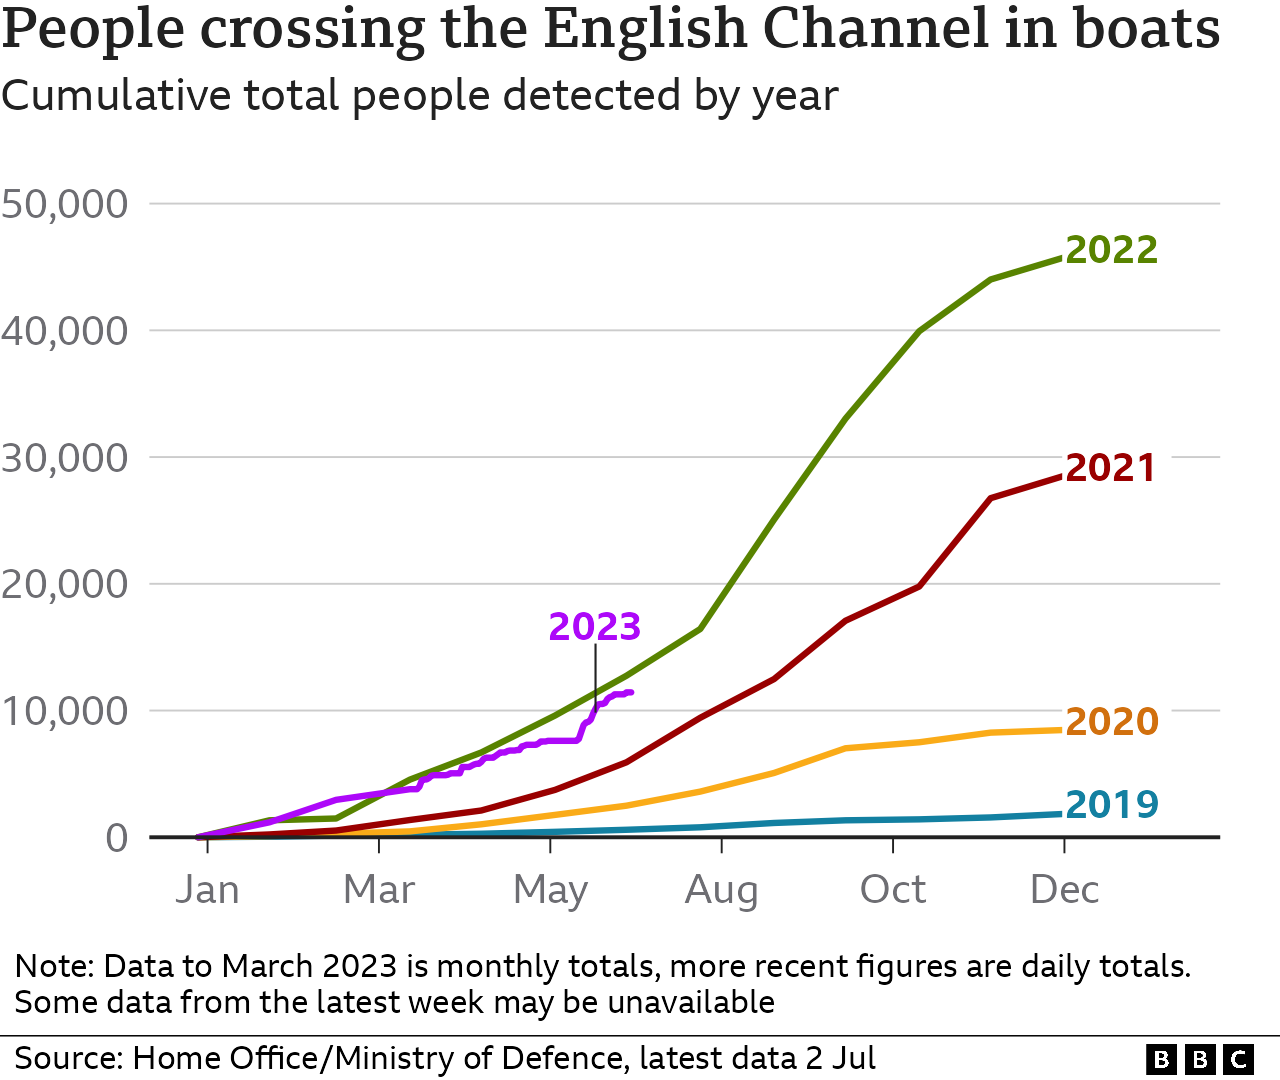 Линейная диаграмма, где каждая линия представляет год с 2019 по 2023 год, показывающая совокупное количество людей, обнаруженных при пересечении Ла-Манша на небольших лодках в период с января по декабрь. Общее количество становится все выше из года в год: к концу 2022 года было обнаружено почти 46 000 человек. Данные за 2023 год составляют около 11 400 человек по состоянию на 2 июля, что немного ниже уровня, наблюдавшегося в то же время в 2022 году.